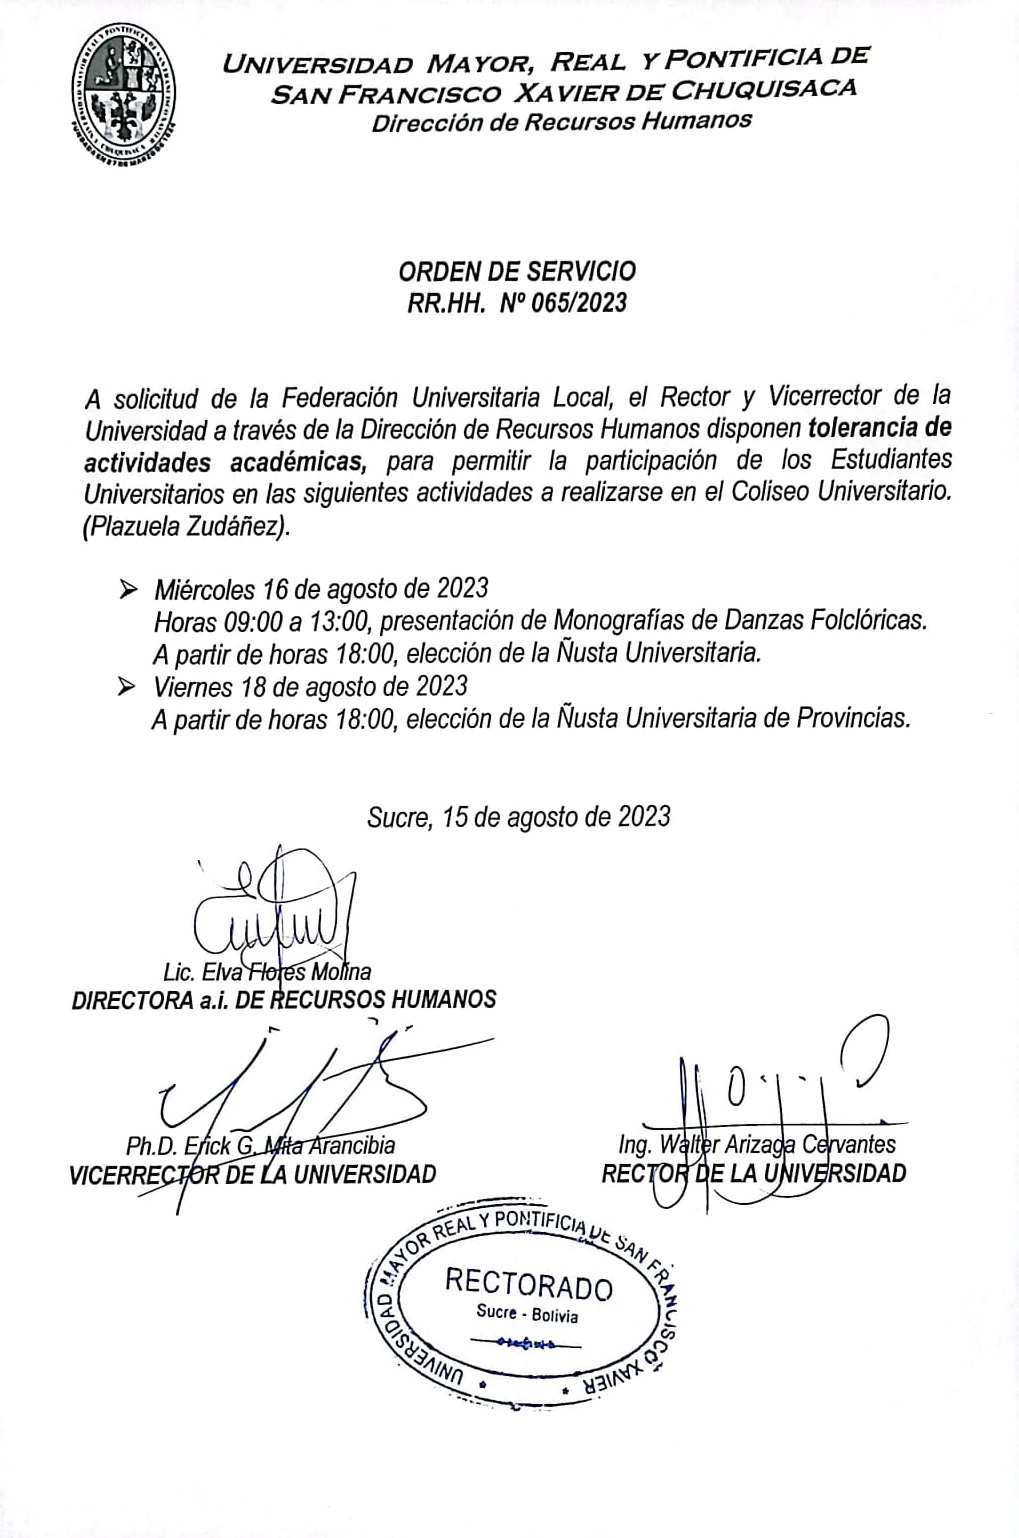 ORDEN DE SERVICIO RR.HH. Nº 065/2023, TOLERANCIA ACTIVIDADES ENTRADA UNIVERSITARIA.